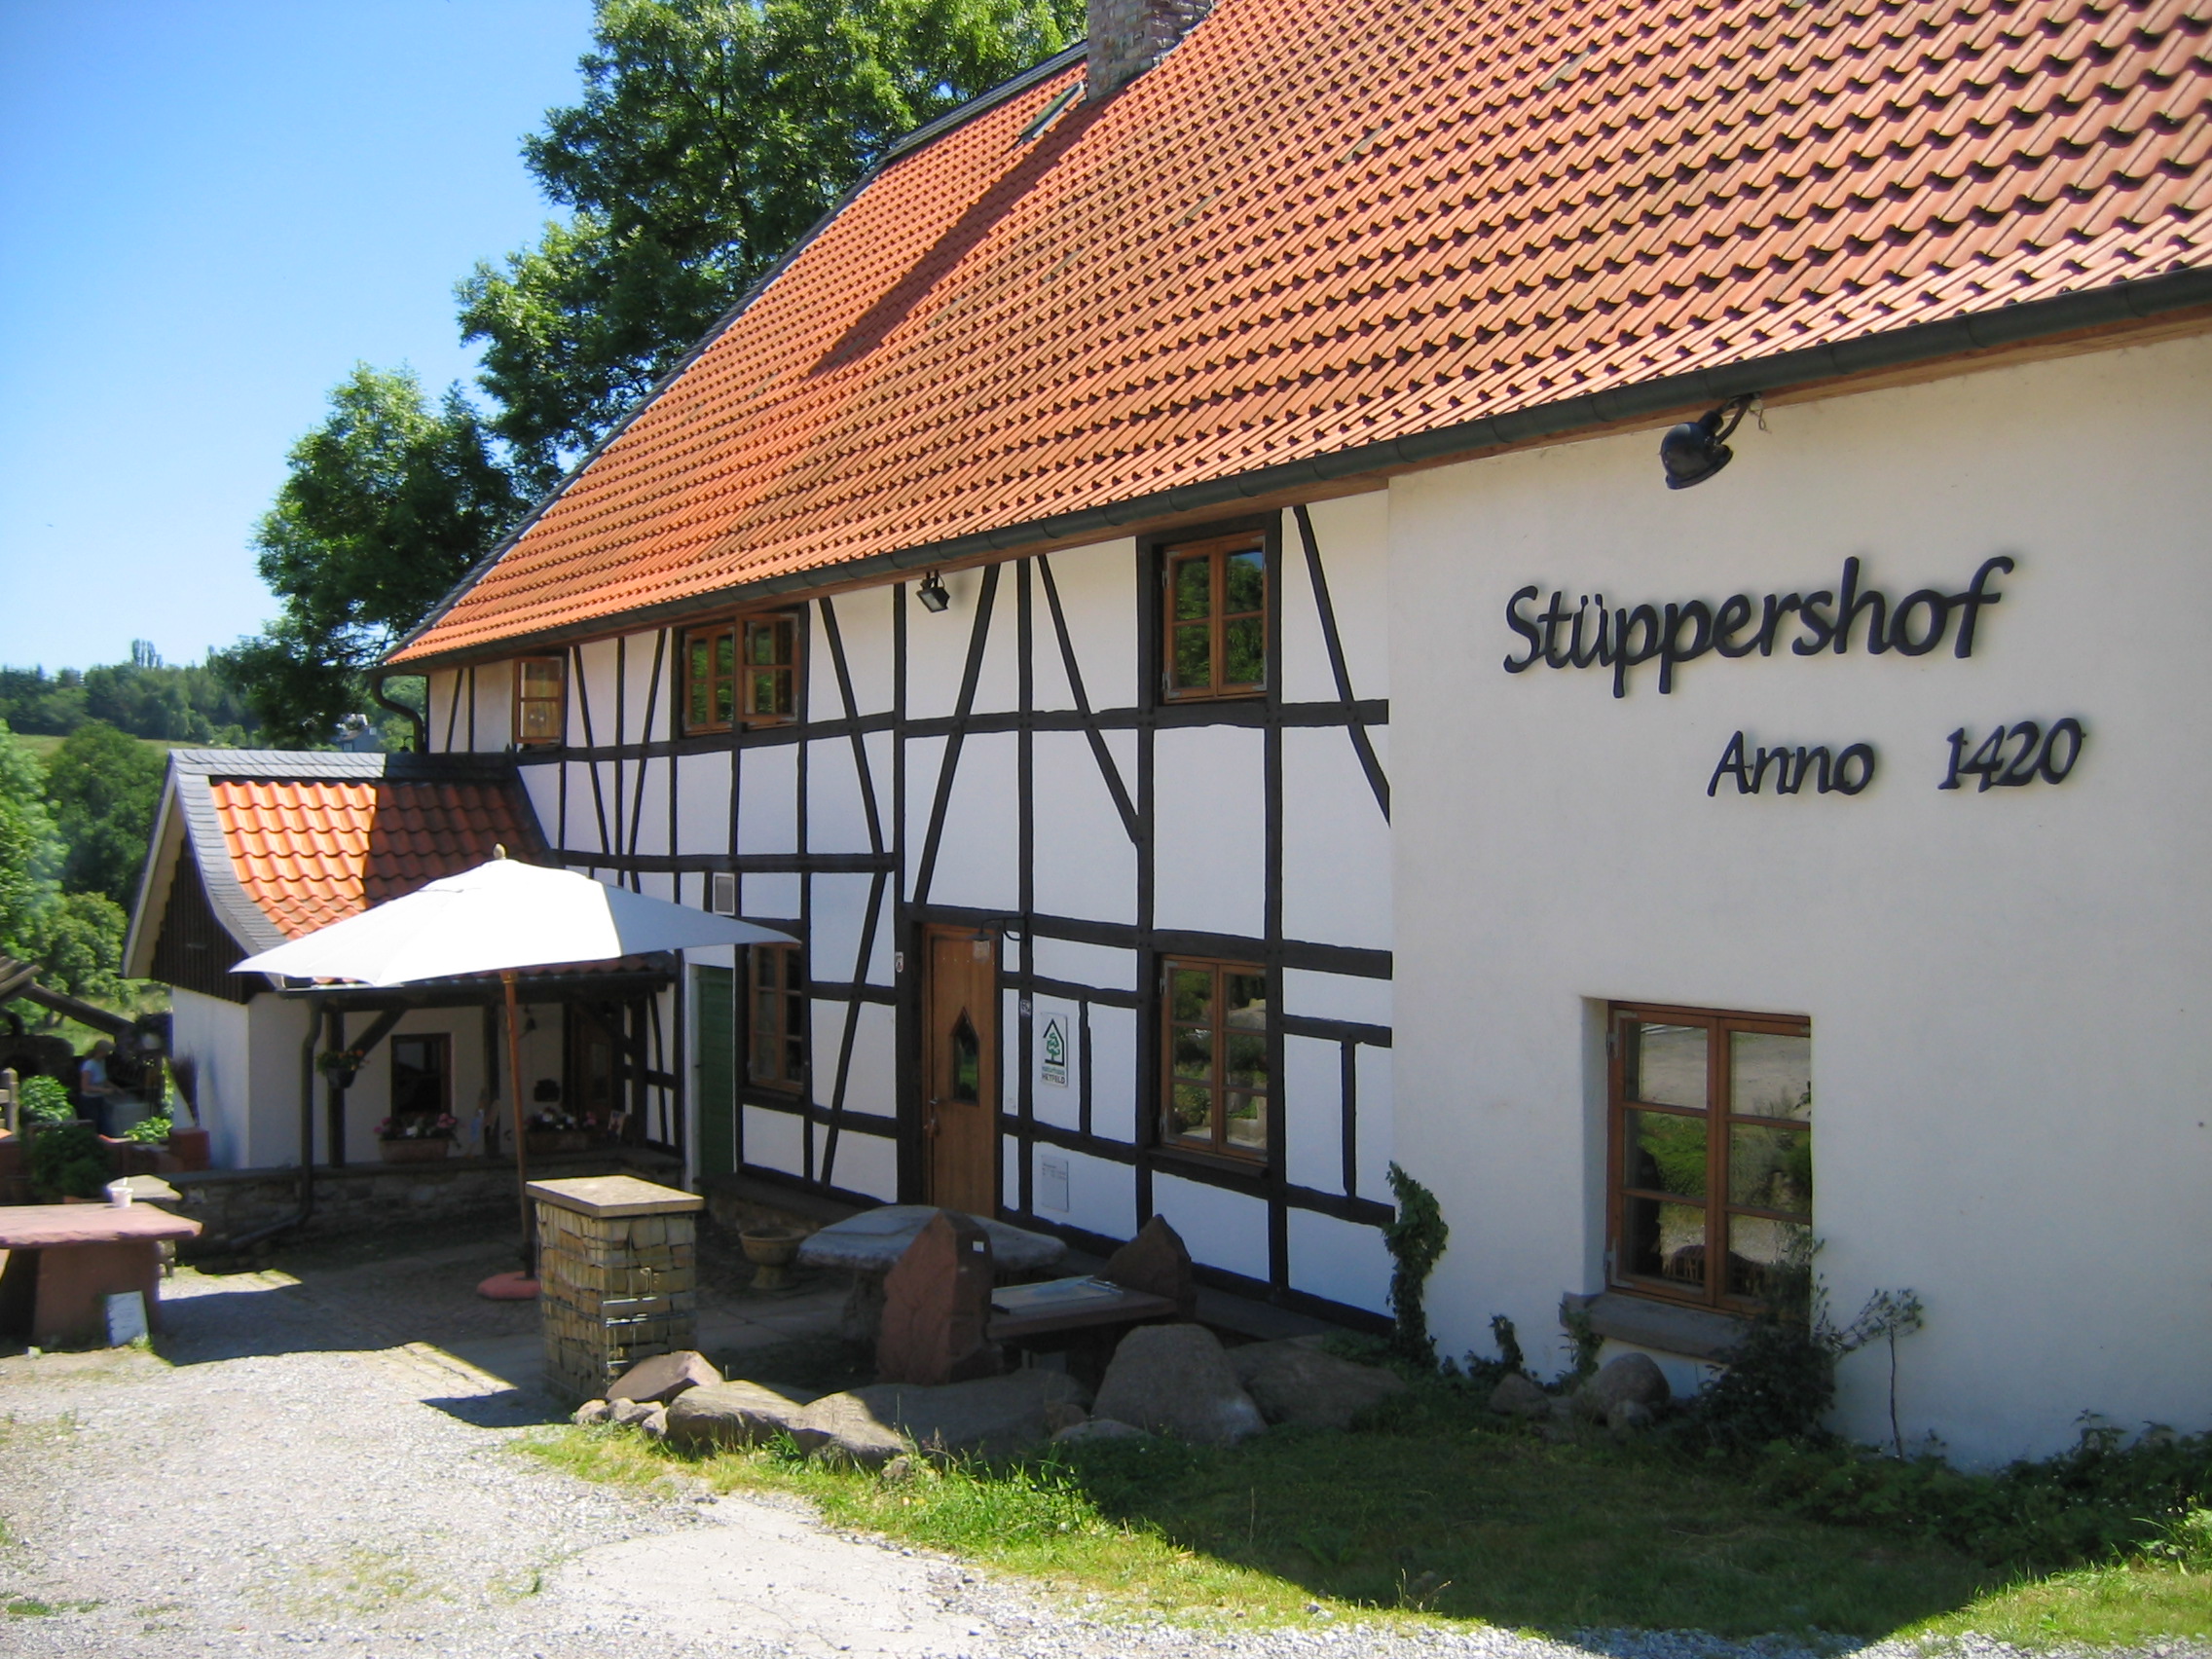 Stüppershof